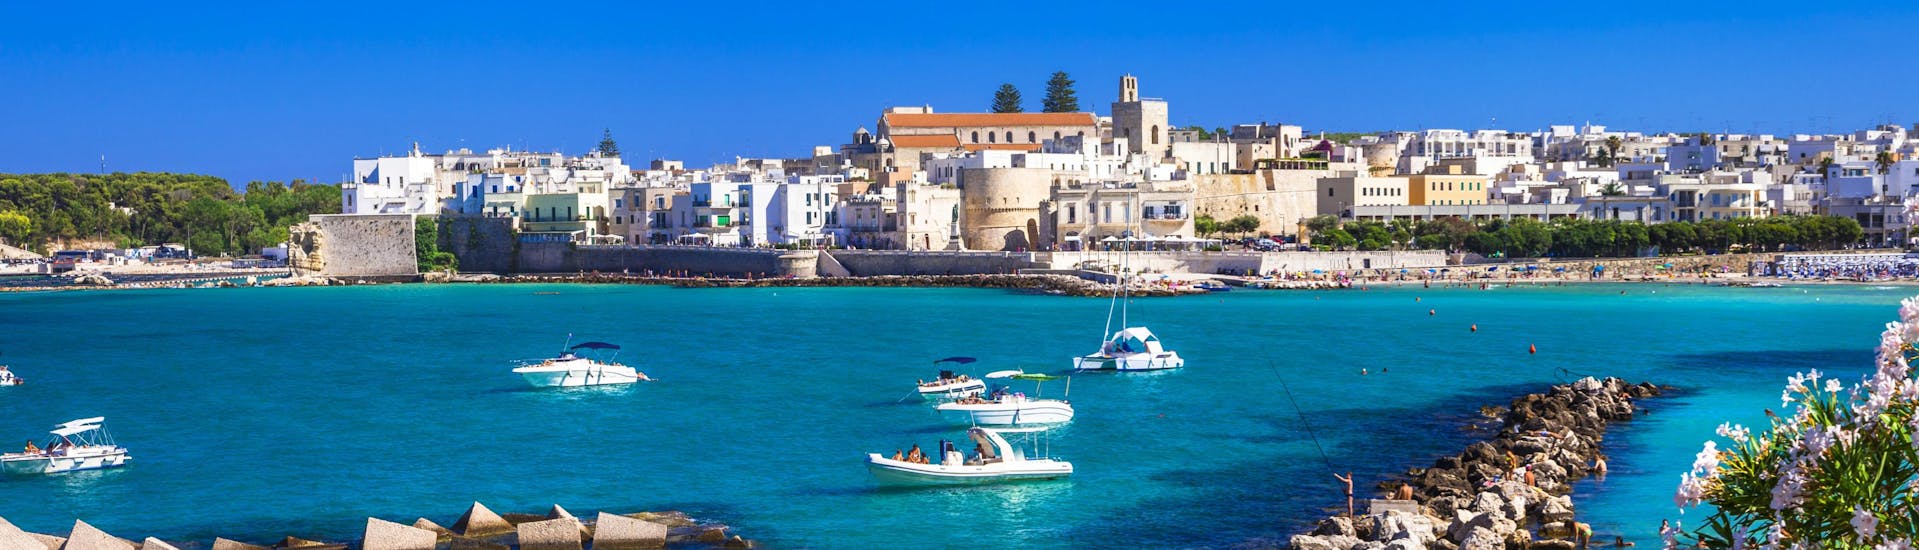 La ville d'Otrante vue par la mer, une vue magnifique que vous pouvez apprécier lors d'une balade en bateau.